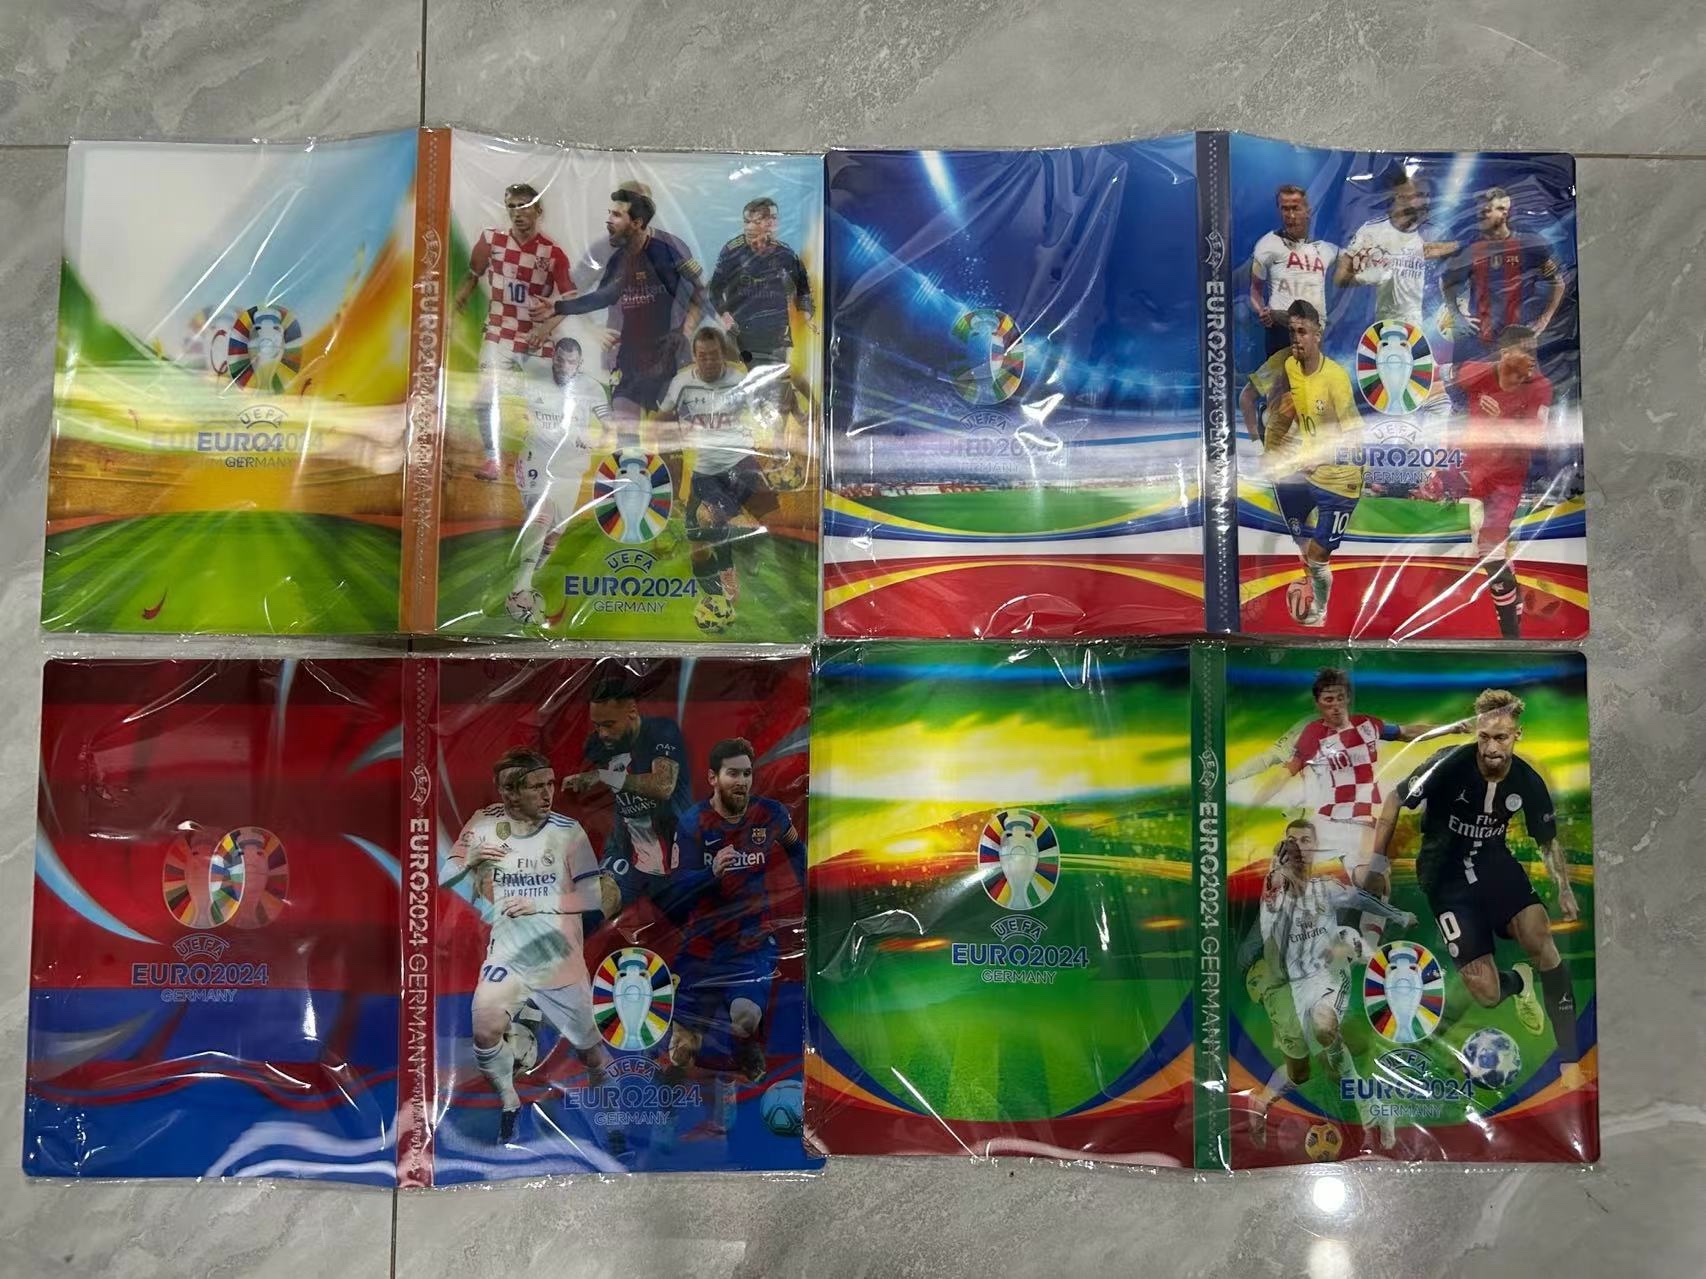 卡片收集卡册 收集卡片 9格4格Pokémon小精灵收集卡册足球手机卡册卡片产品图